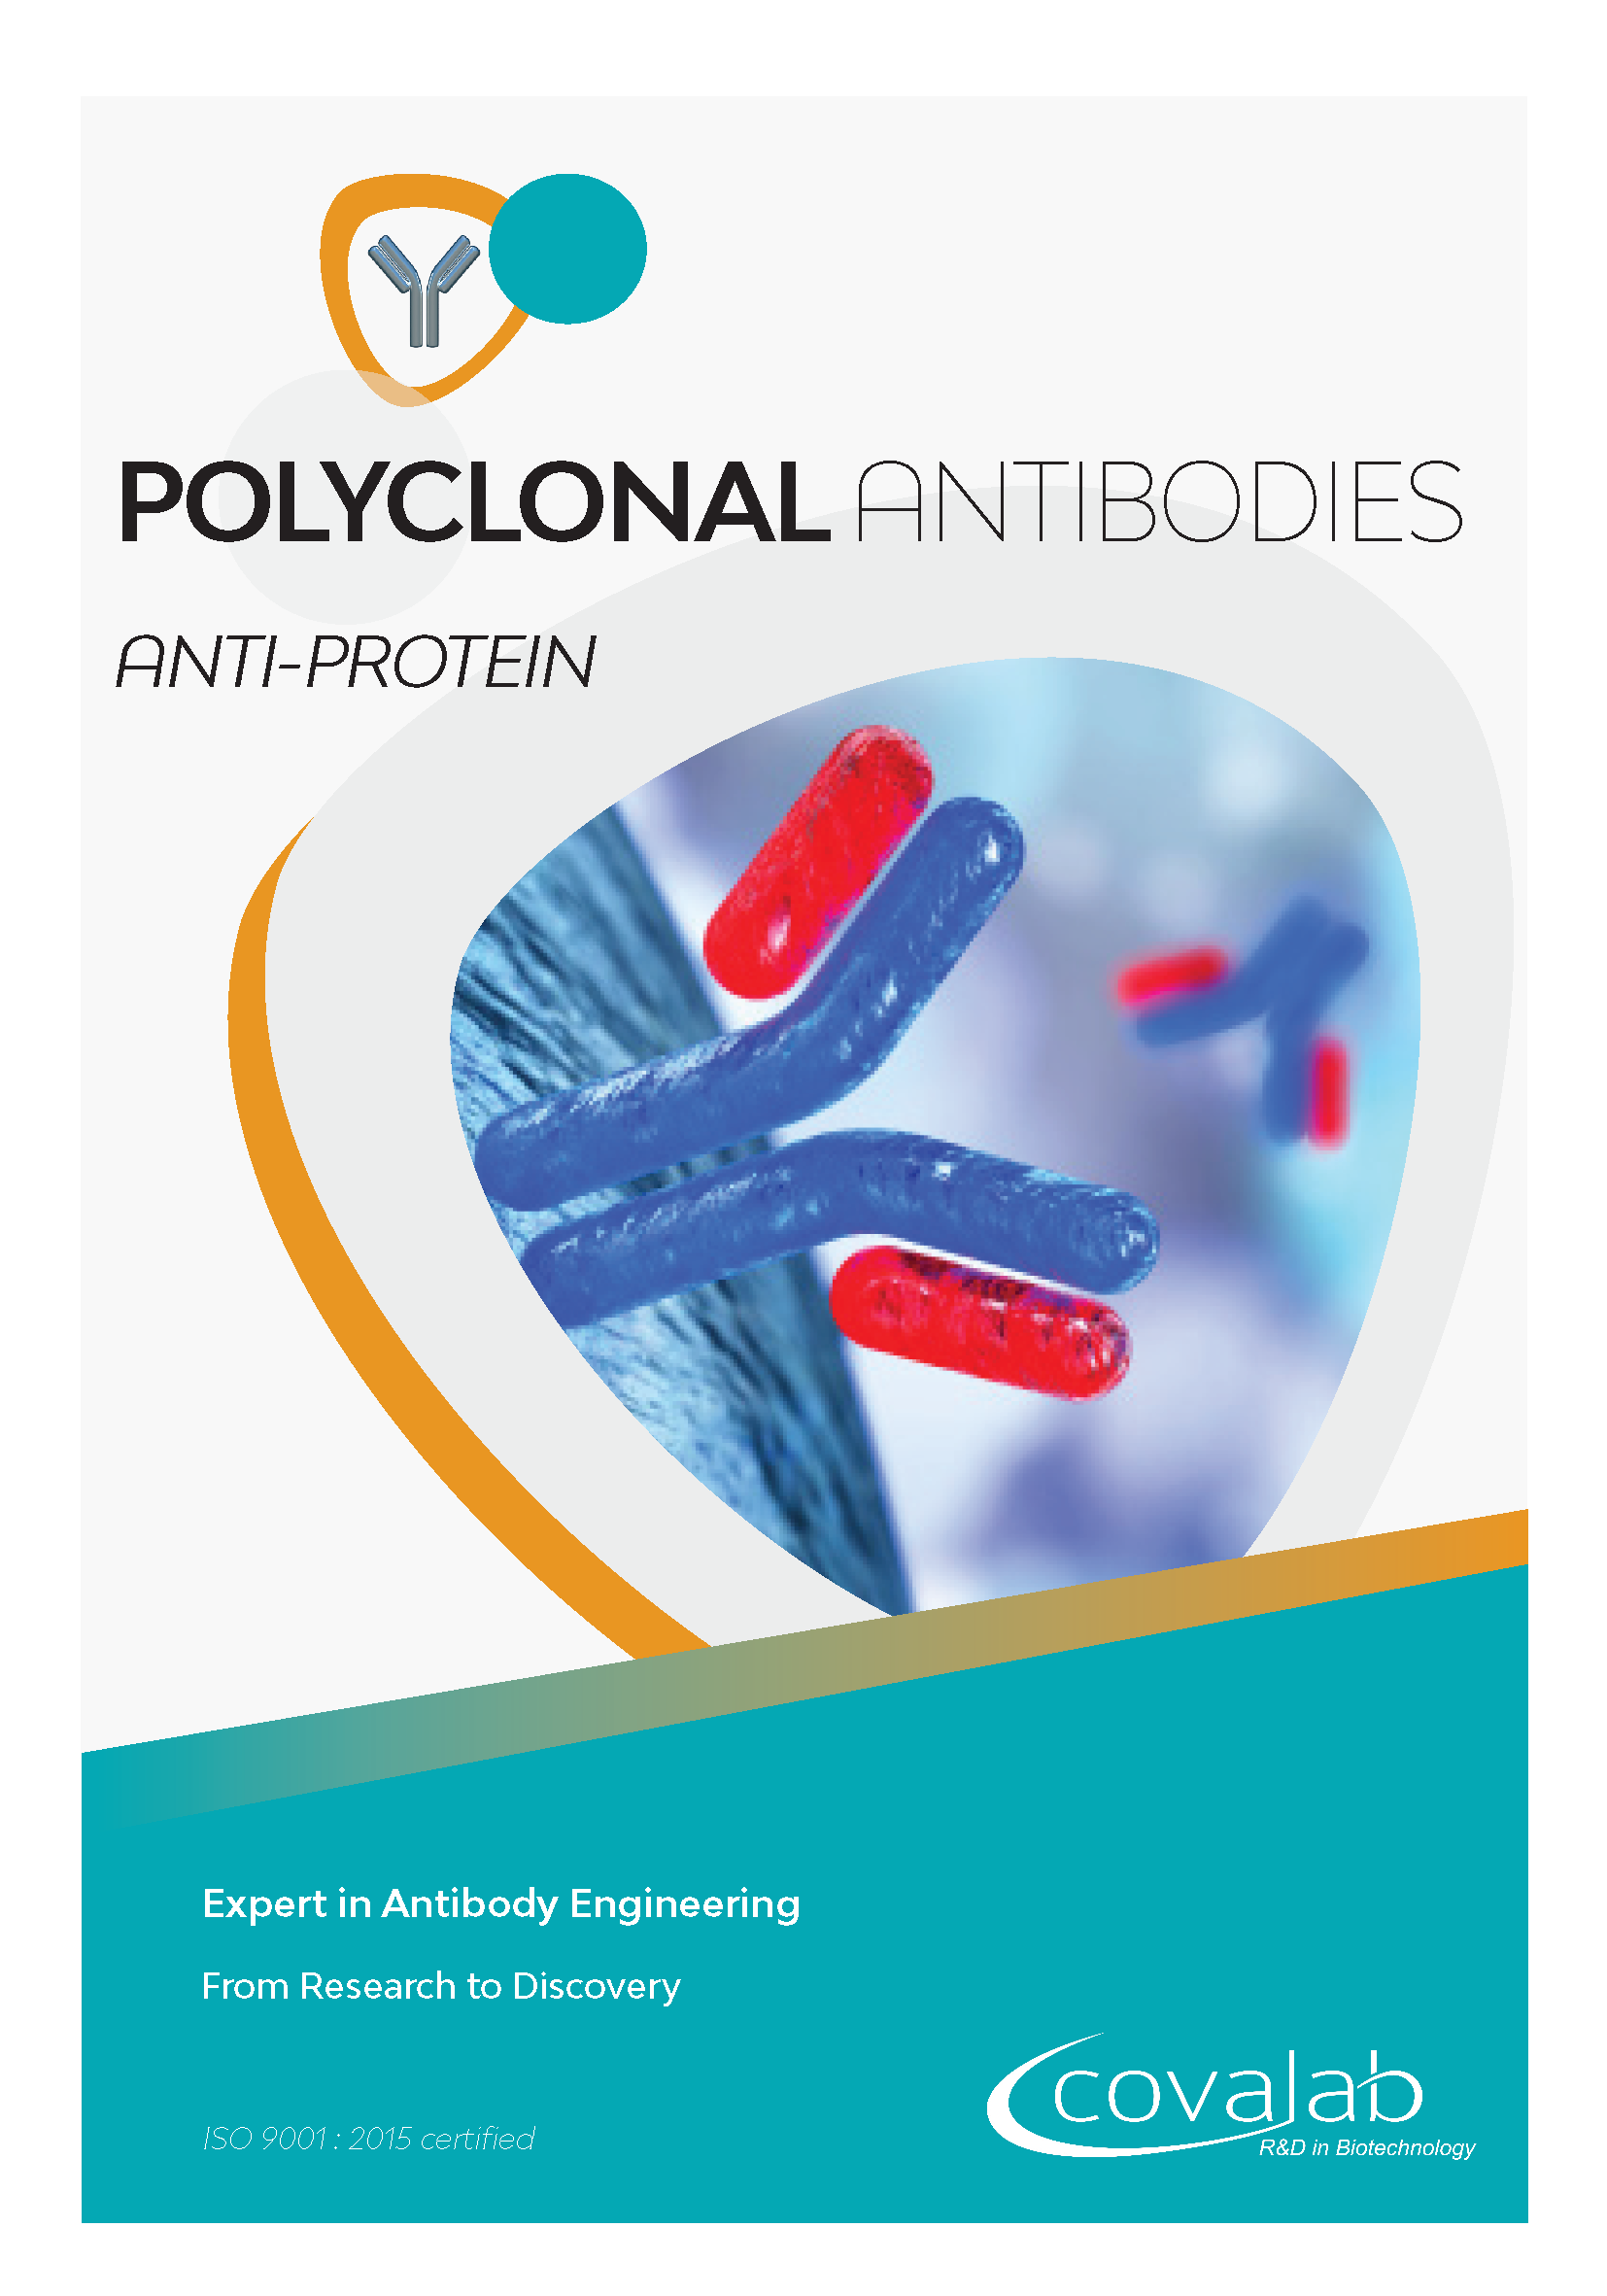 Custom anti-protein polyclonal antibodies